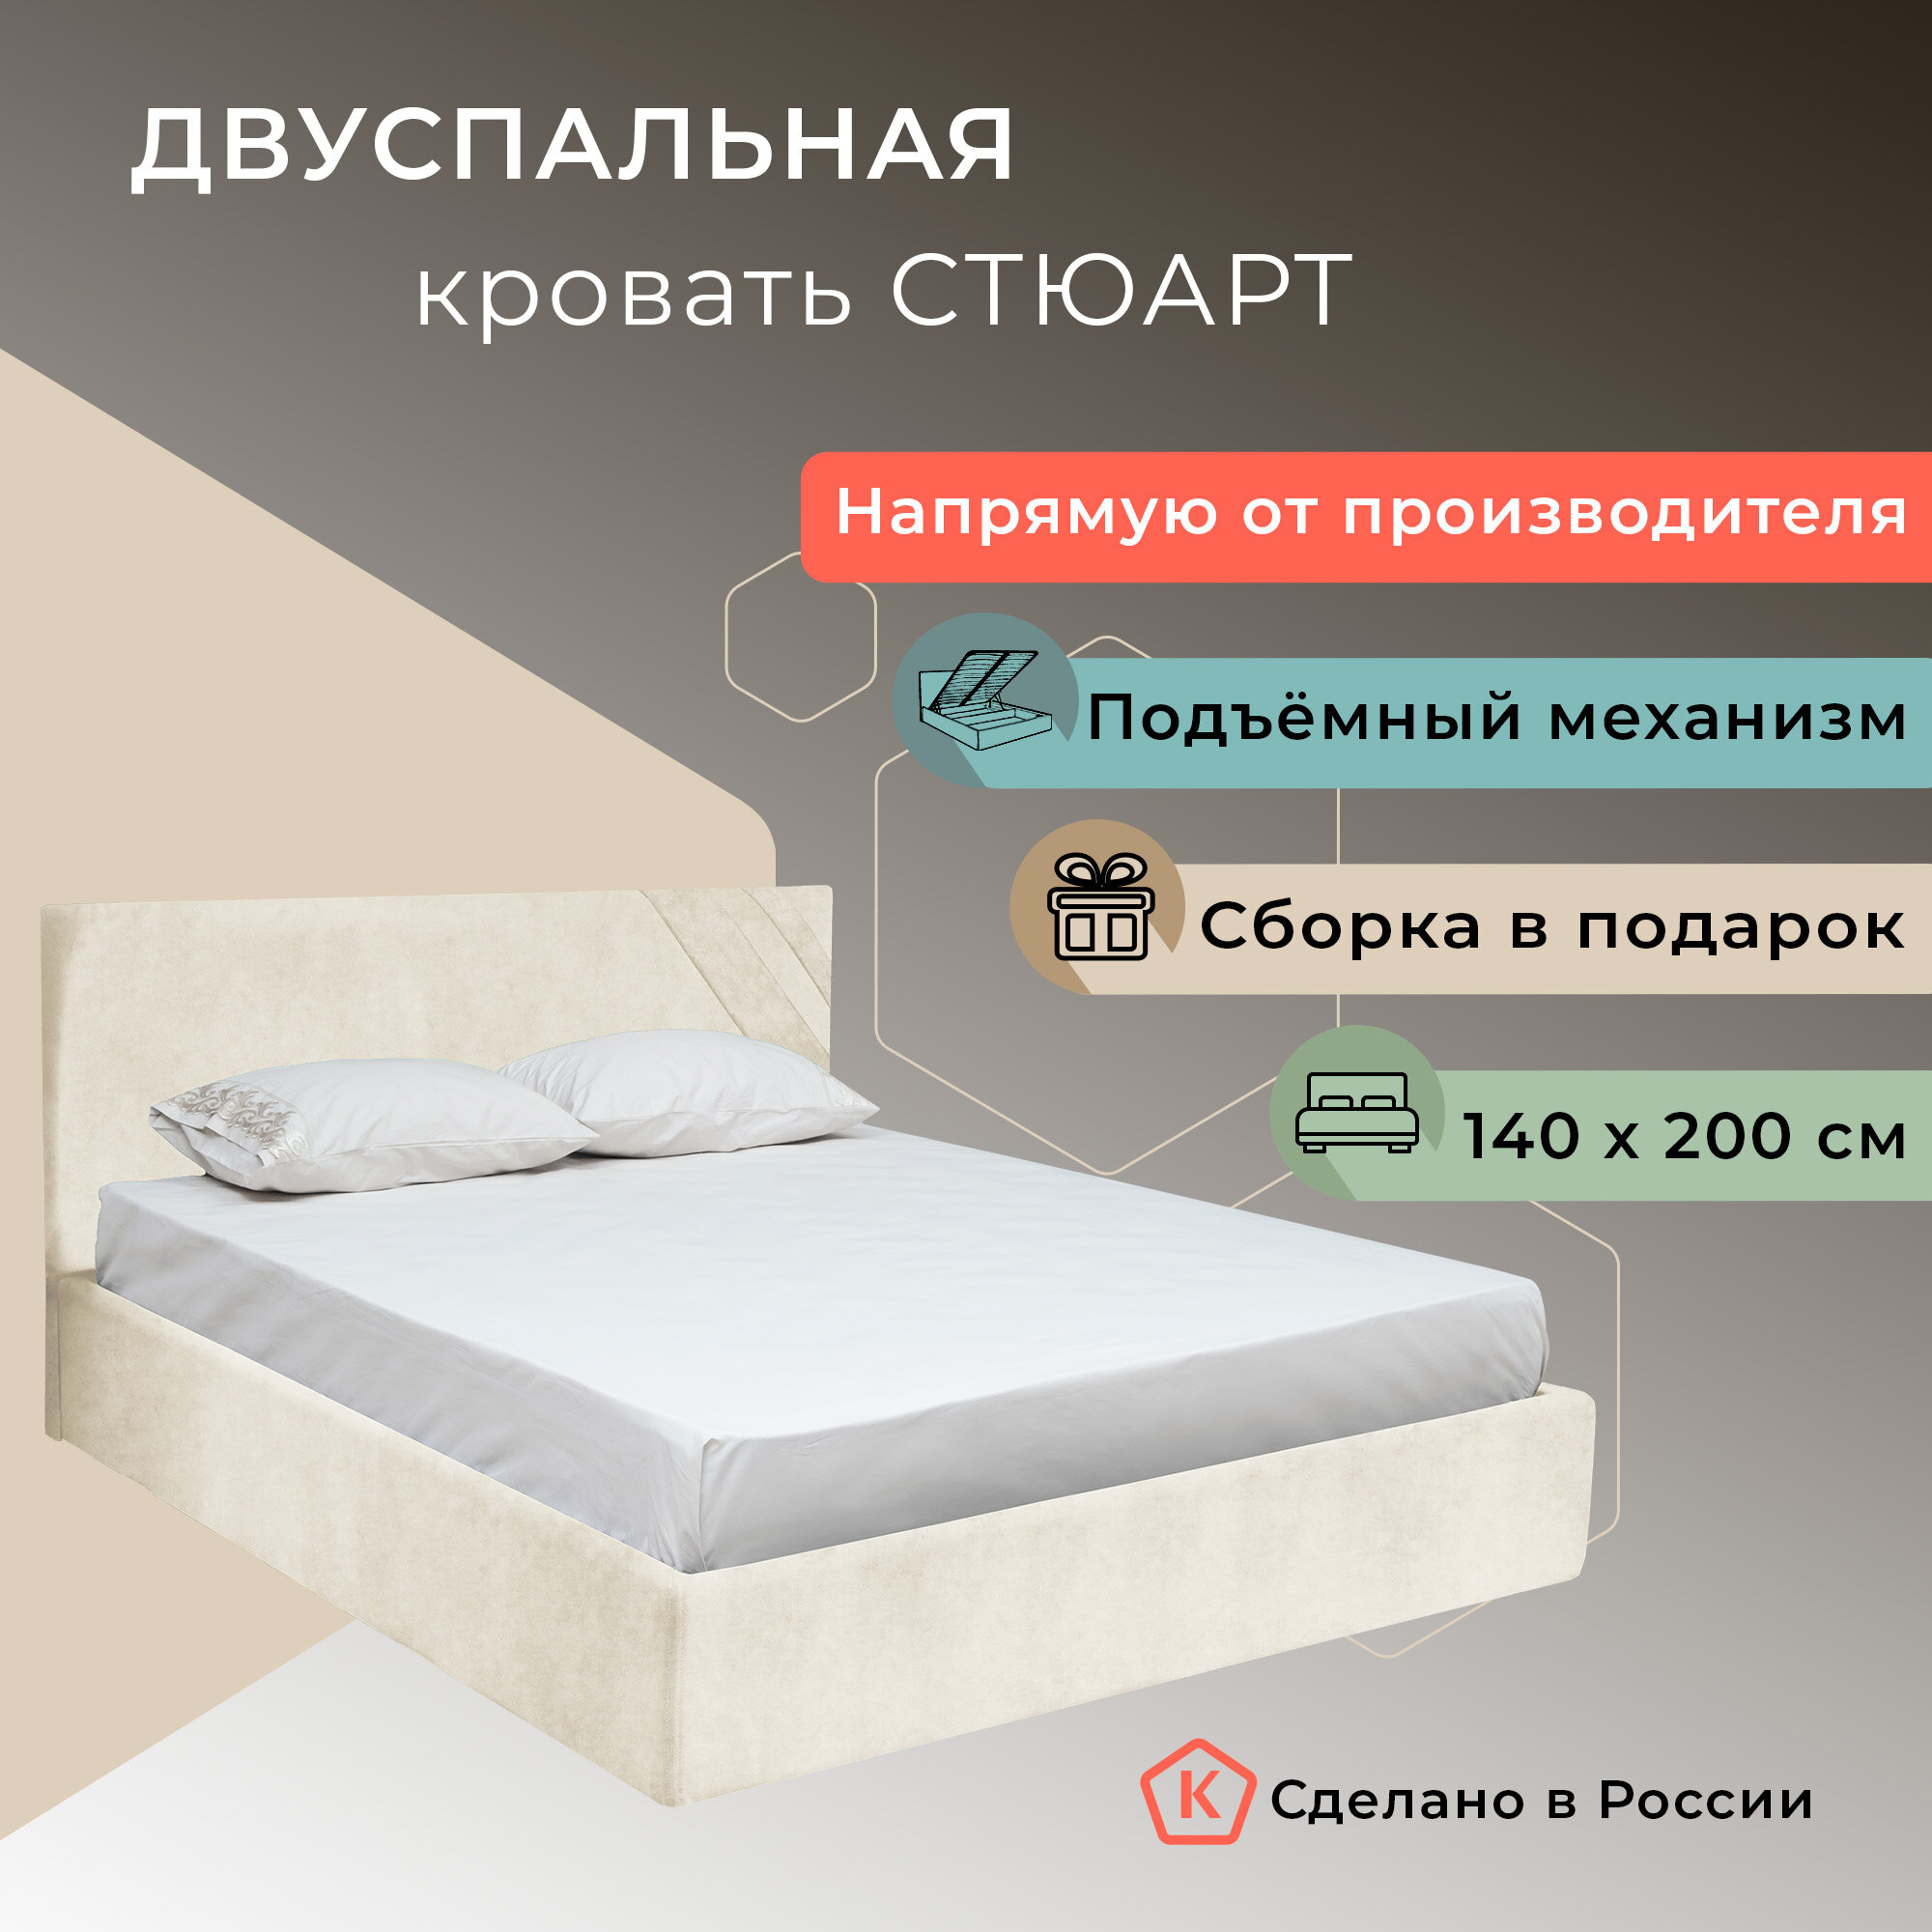 Двуспальная кровать "Стюарт" с подъёмным механизмом, 200*140 см, Newtone white, YouComf